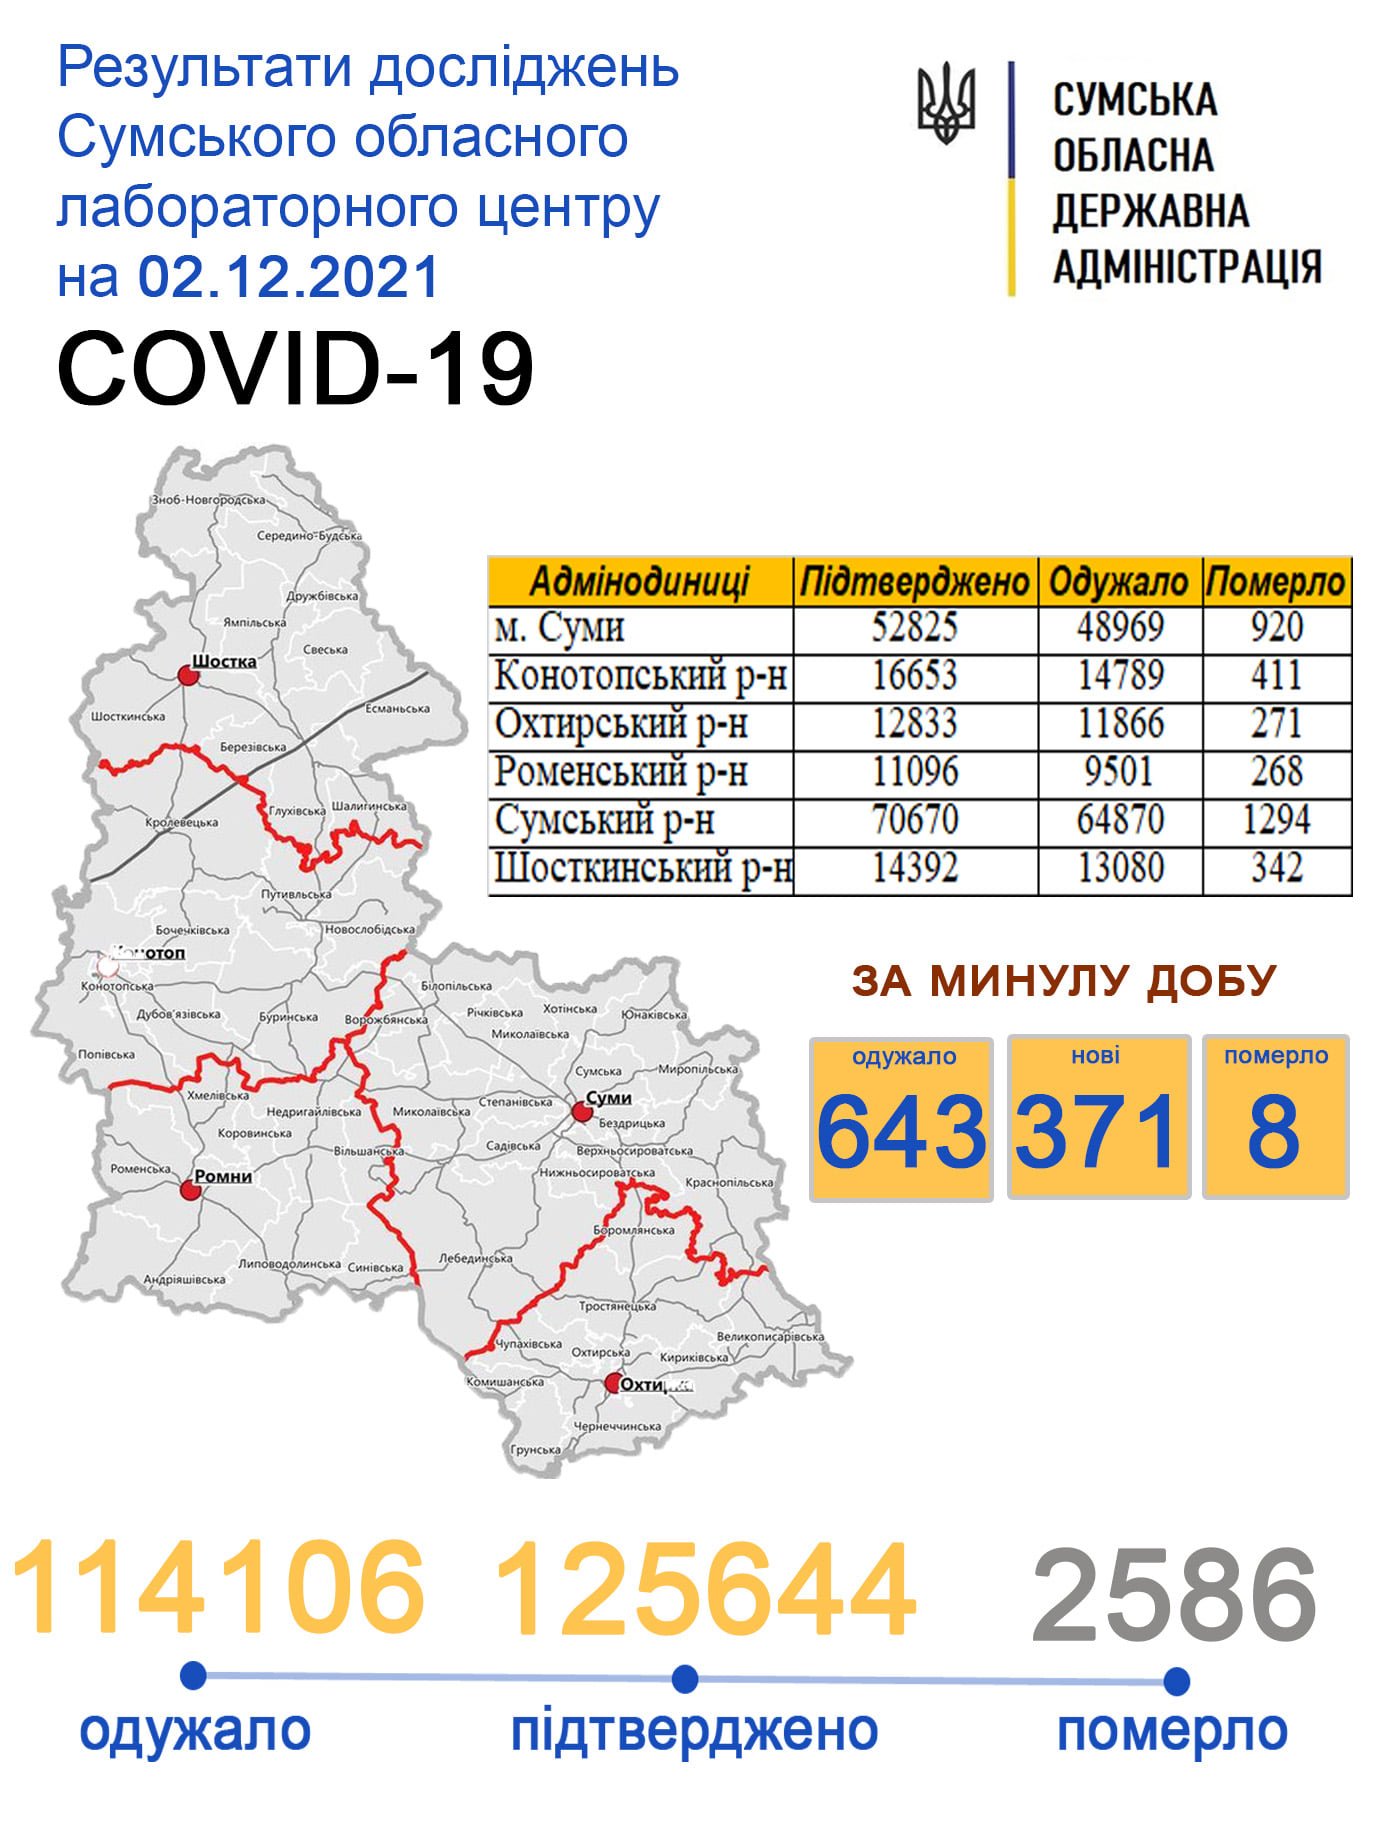     covid-19  371  